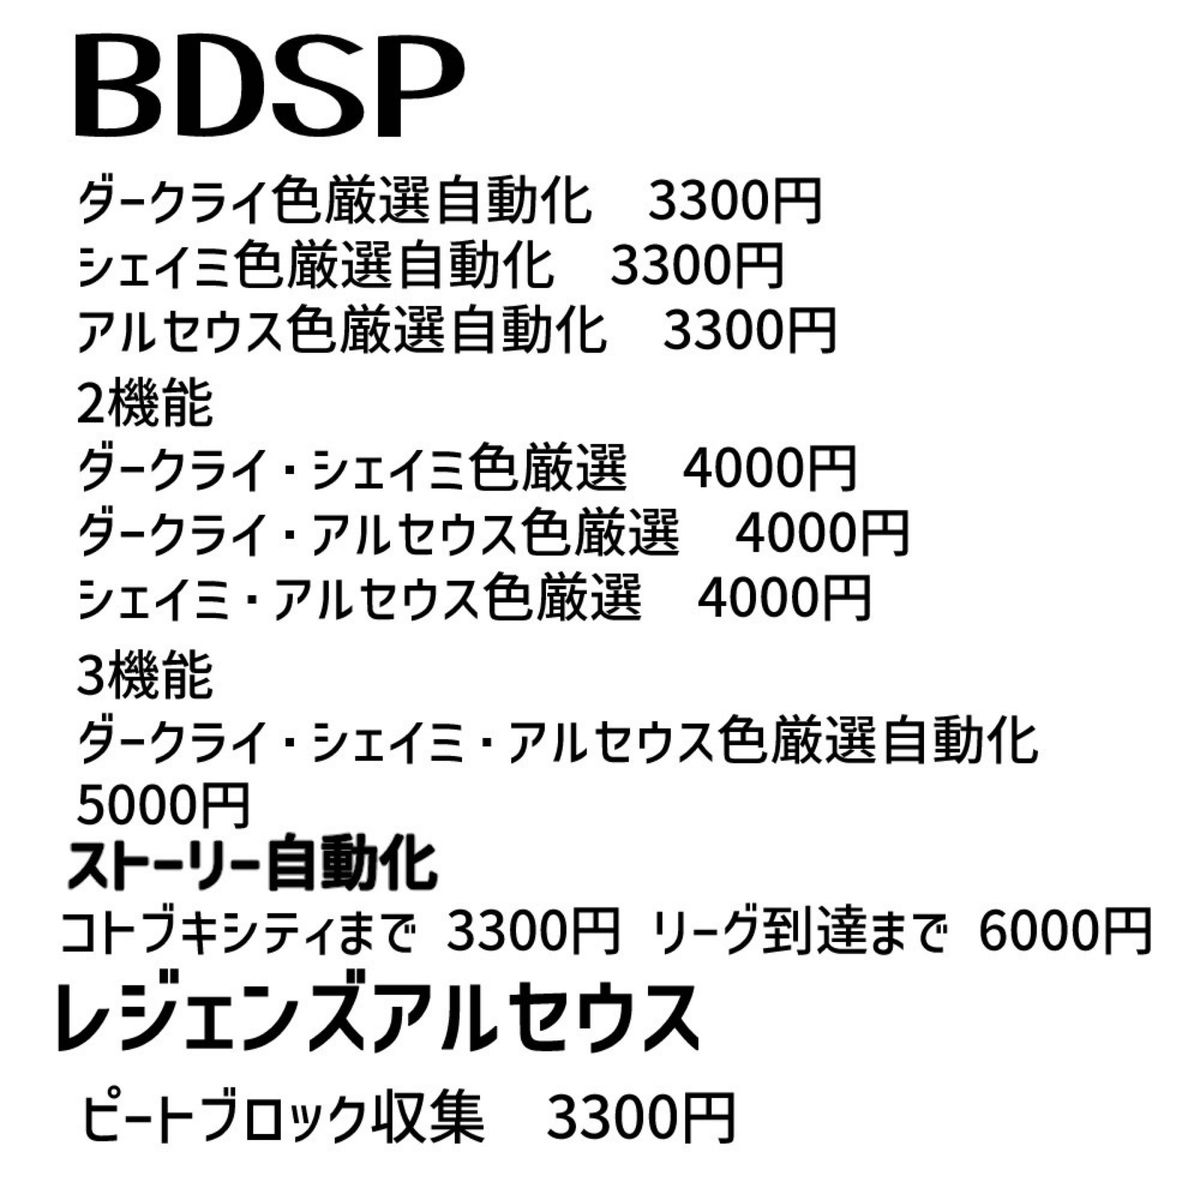 ポケモン剣盾レジ系6体色厳選自動化コントローラー　マイコン　ポケモンファン